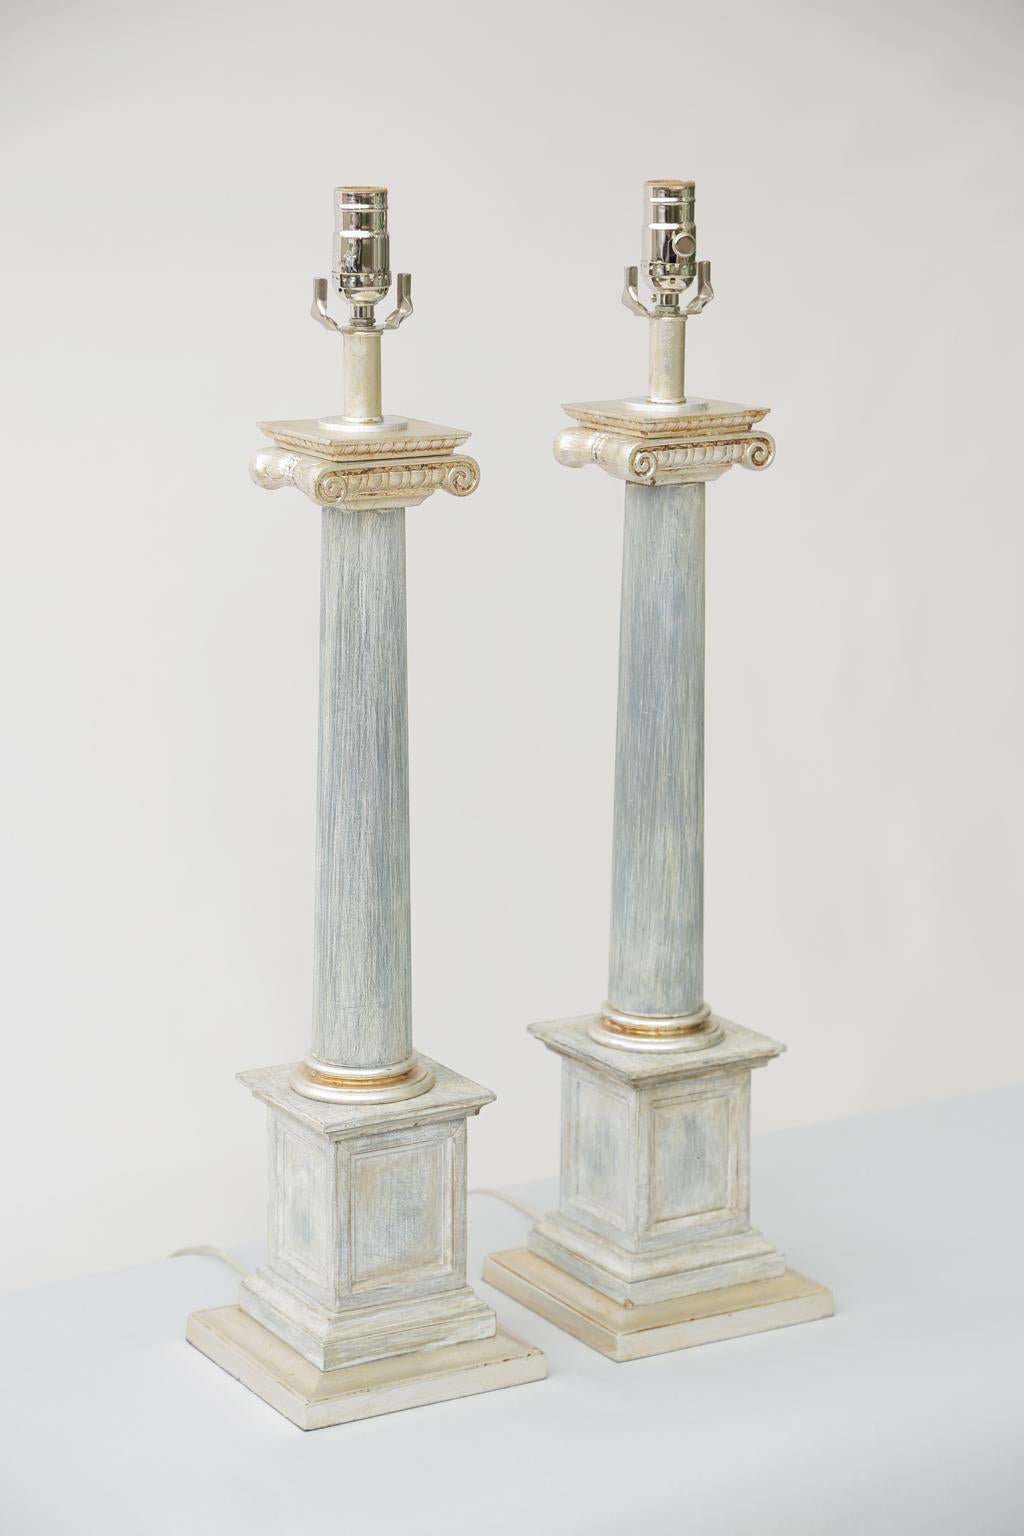 Paire de lampes de table de style néoclassique, par Stiffel ; en forme de colonne, peintes et rehaussées de dorure argentée, chaque chapiteau ionique sur une colonne effilée, reposant sur une plinthe carrée.

Stock ID : D3107.